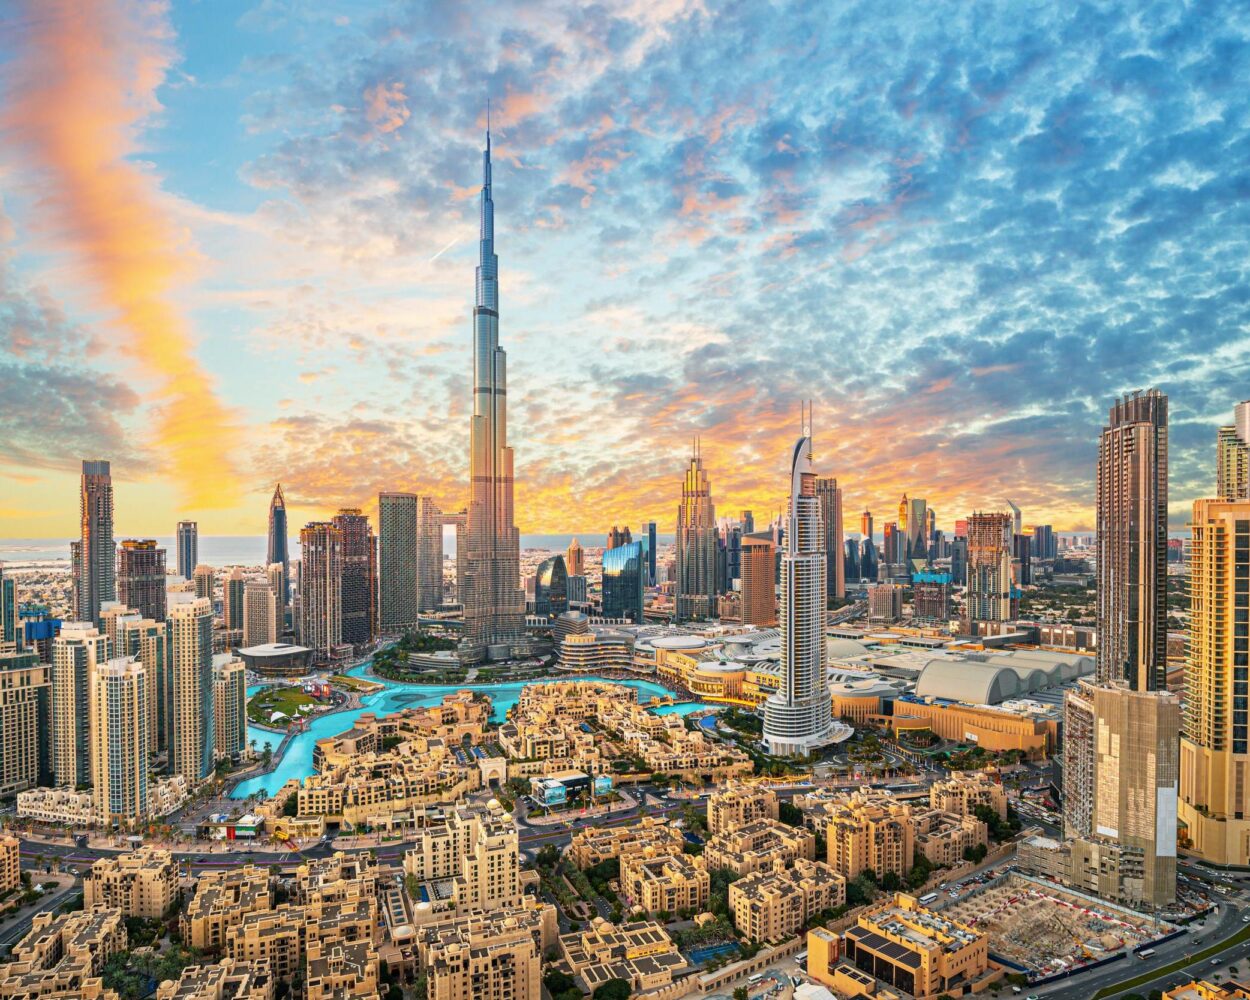 Standortrundreise "Es waren einmal zwei Emirate" inkl. Flug Hintergrundbild